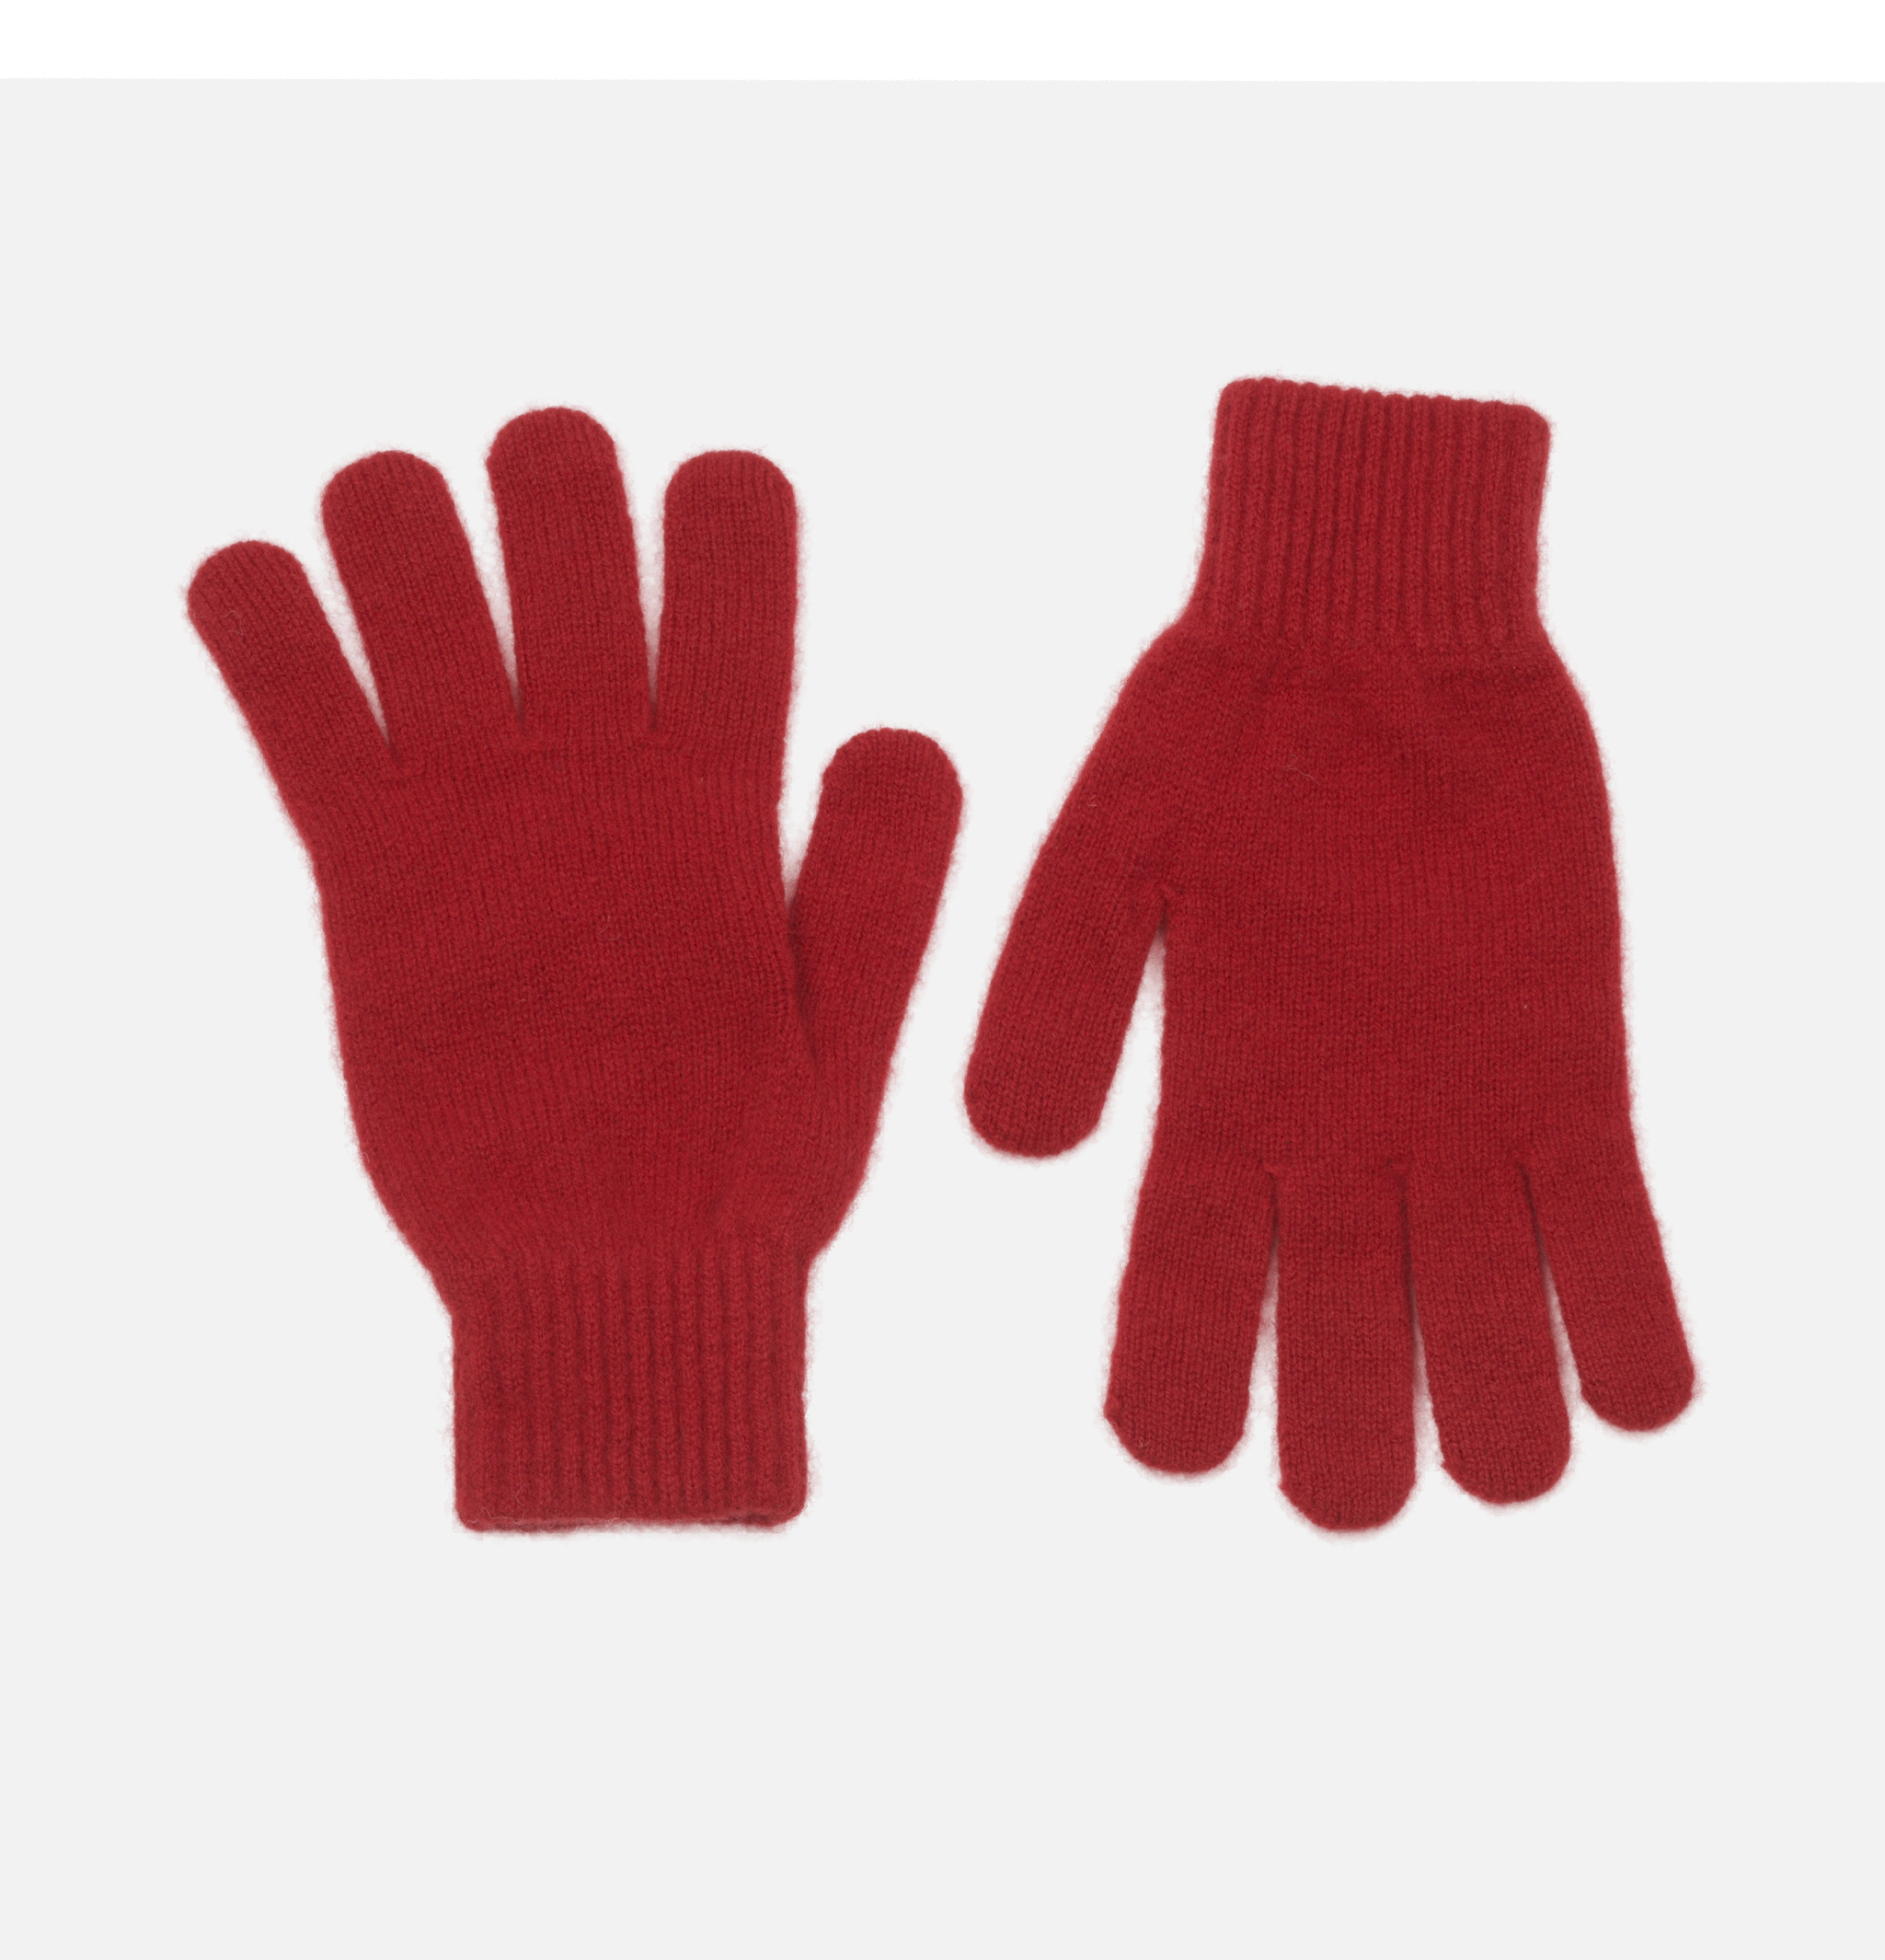 Munro Dubonnet gloves